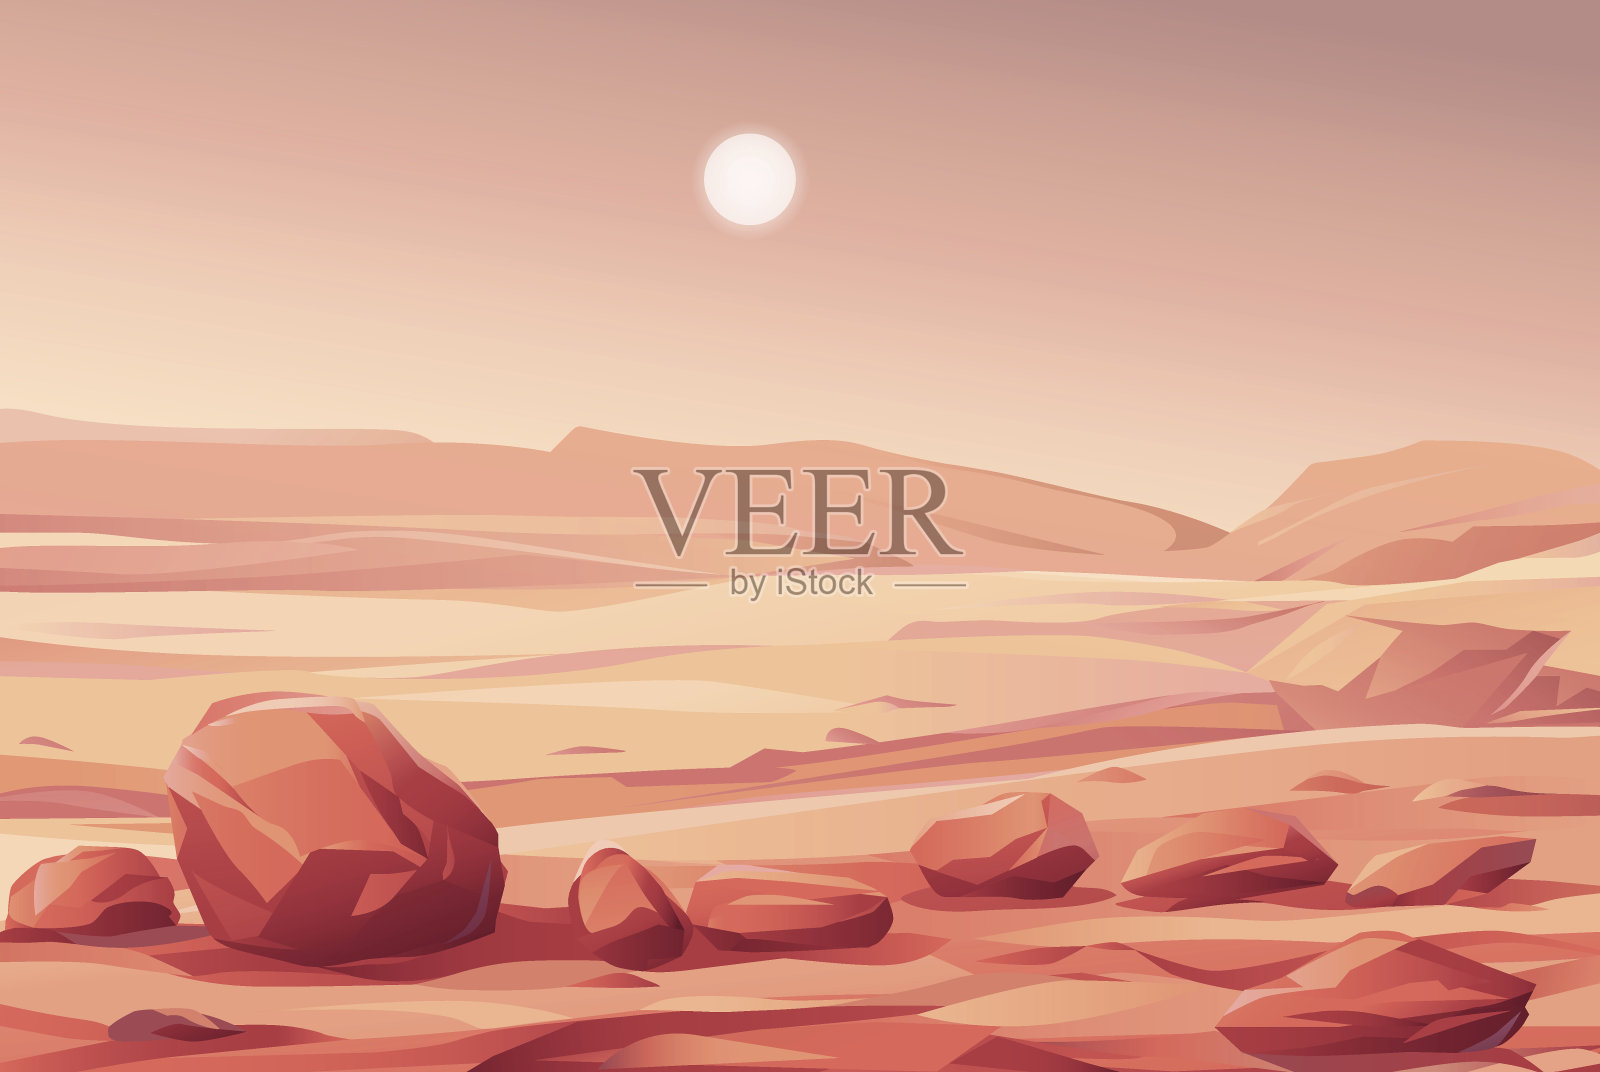 火星景观插画图片素材